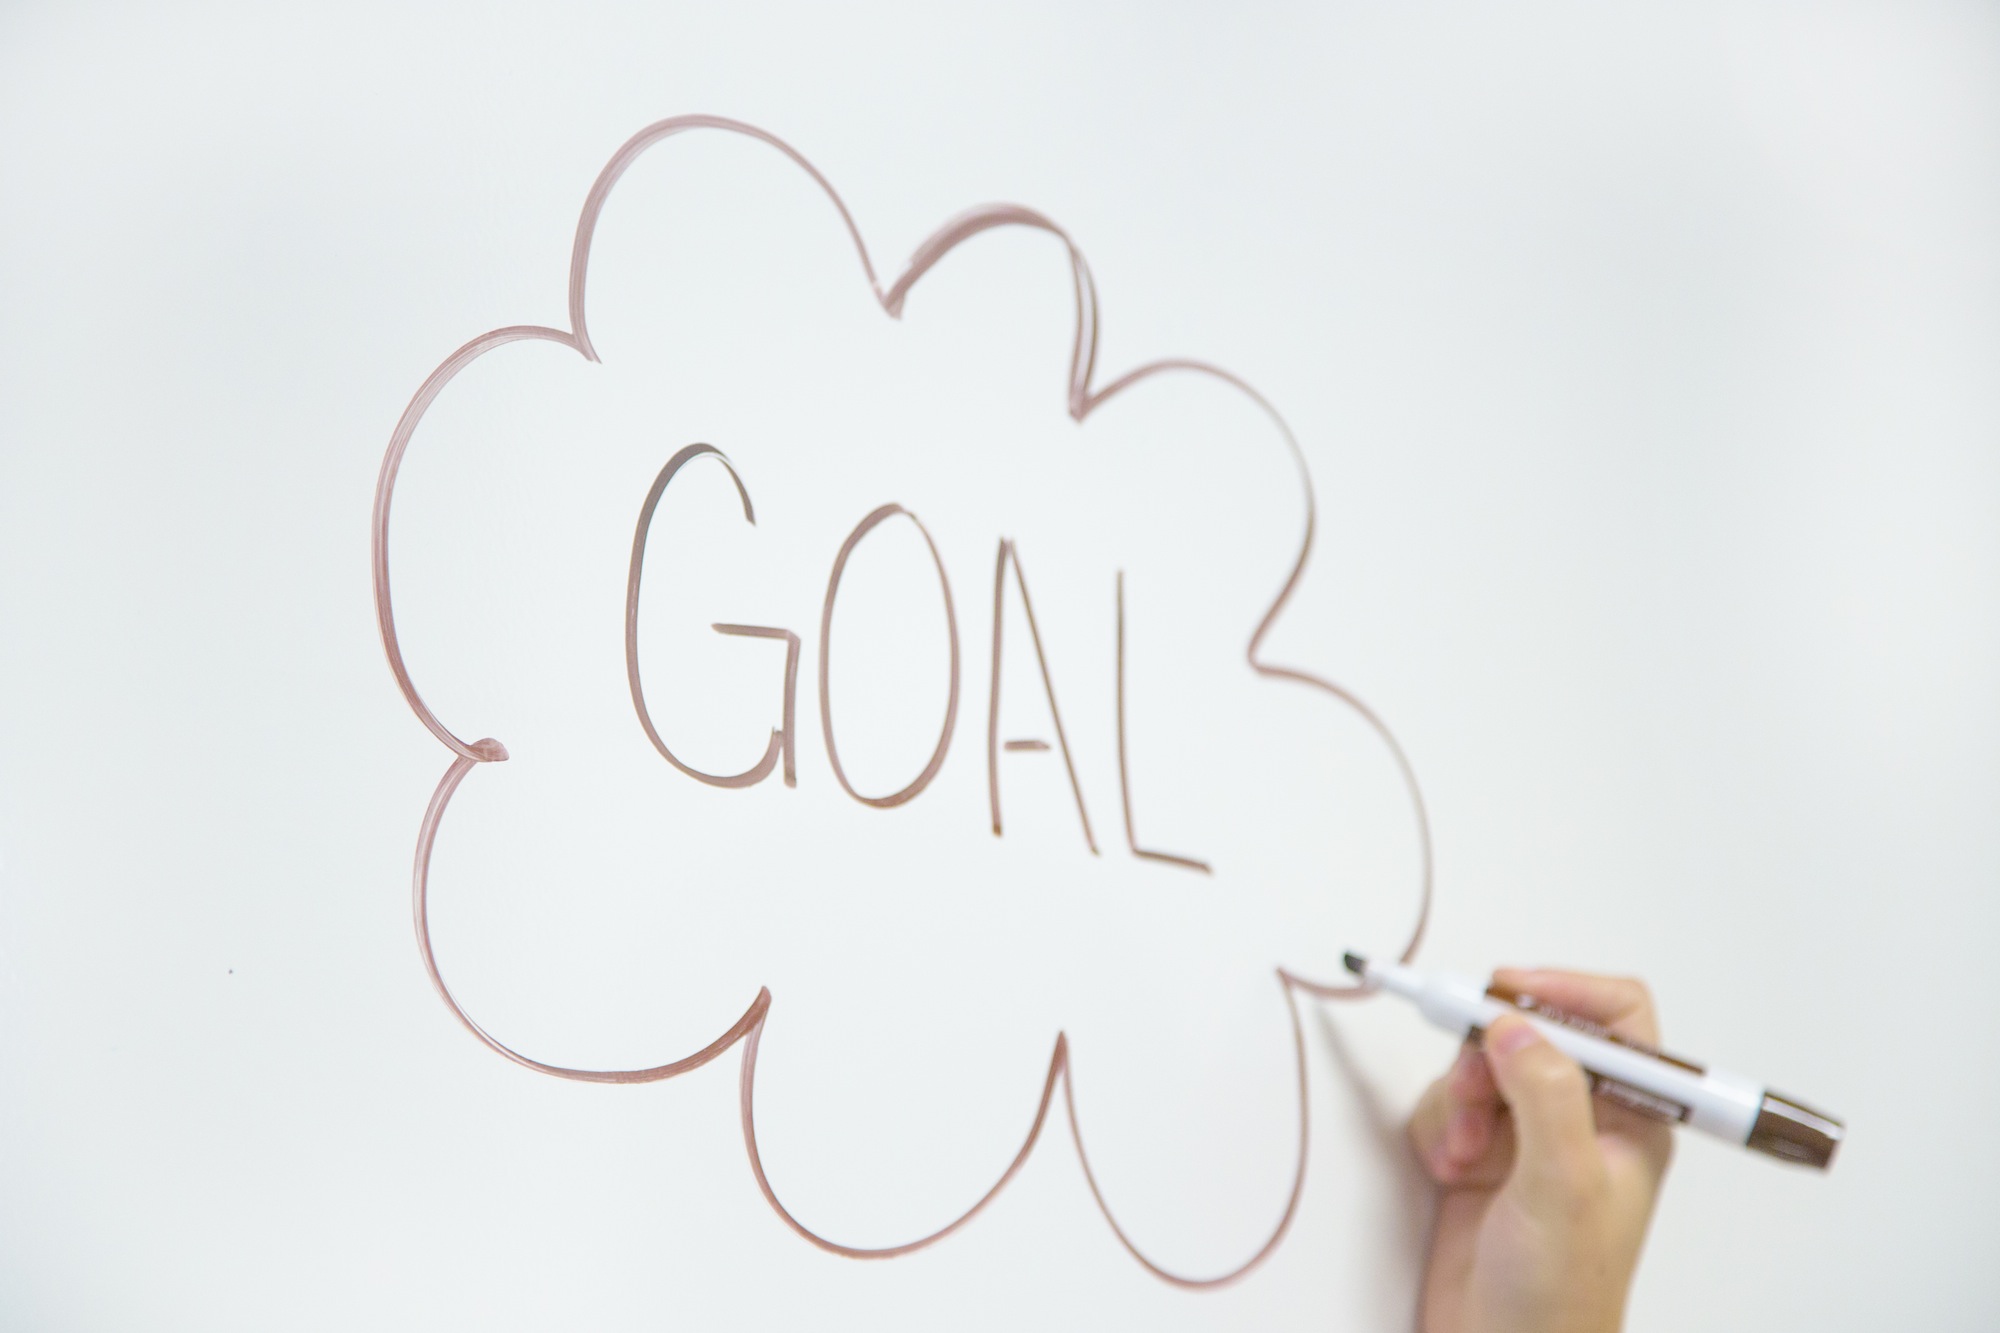 Make sure you set SMART goals for your inbound marketing efforts.